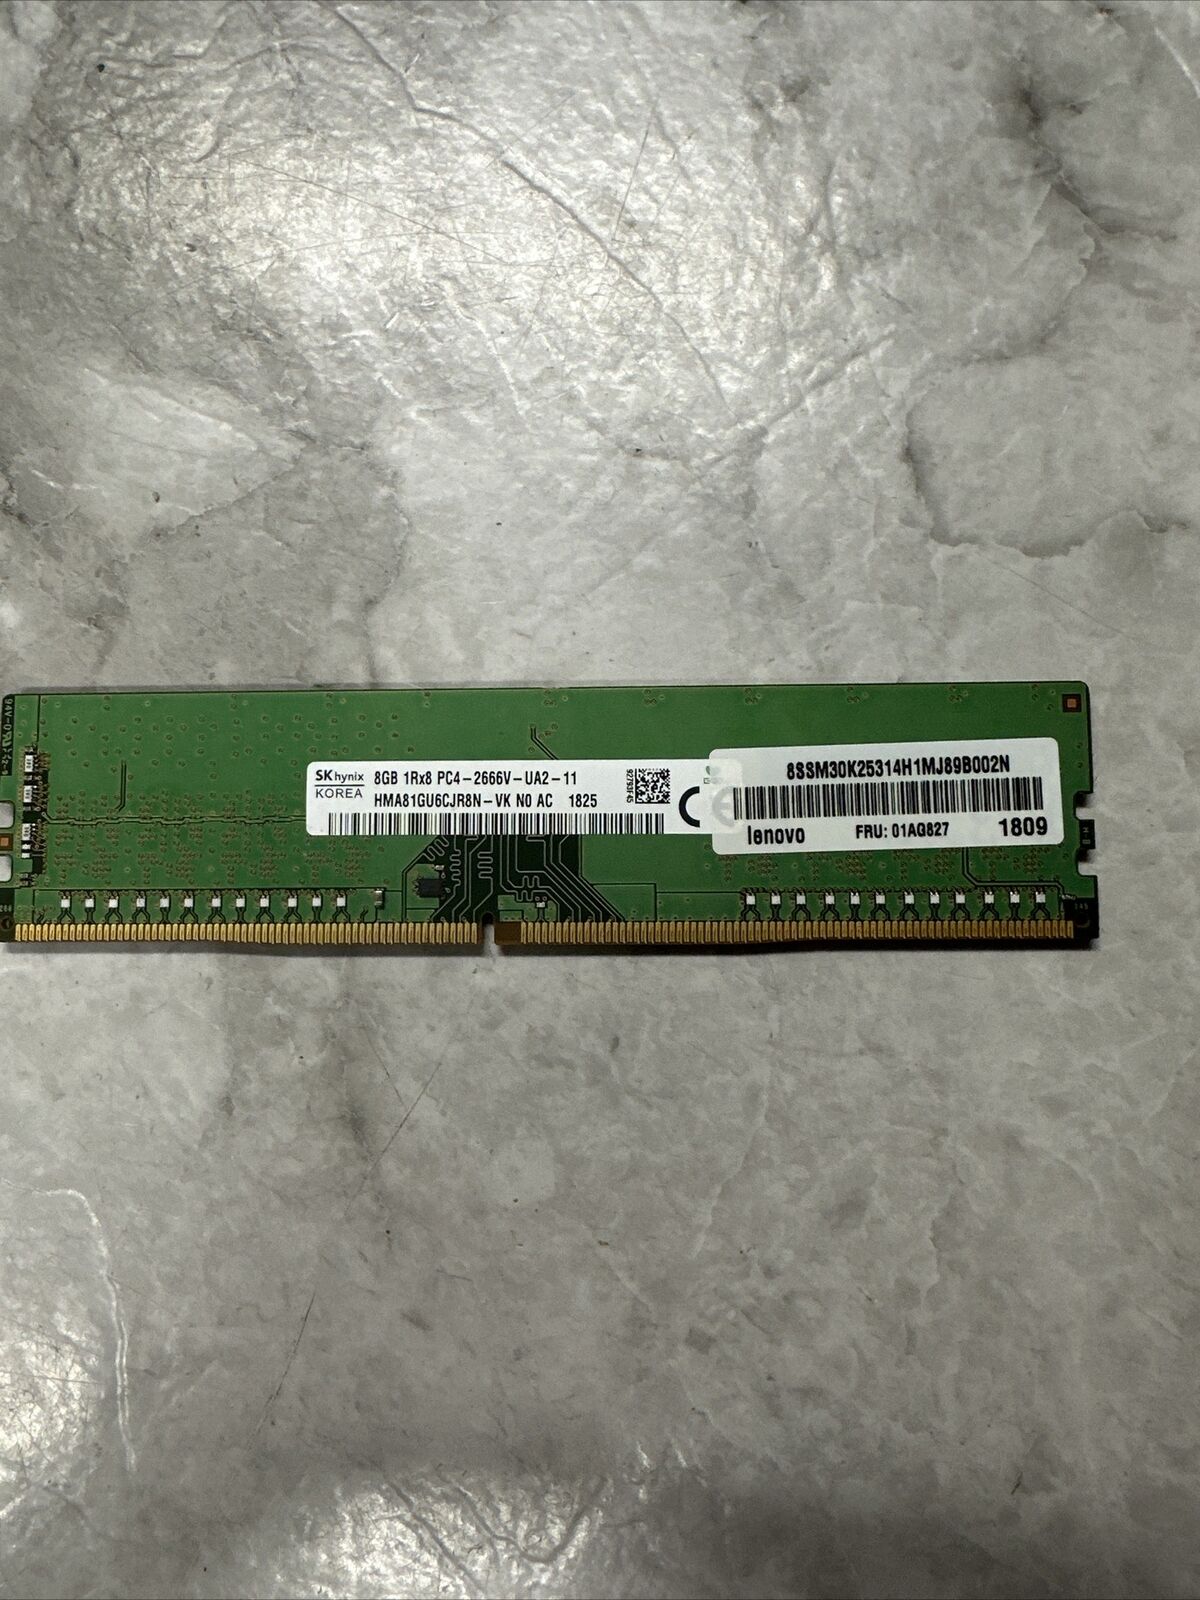 8GB (2X4GB)HYNIX HMA851U6CJR6N-UH N0 AC 4GB 1RX16 PC4-2400T RAM MEMORY